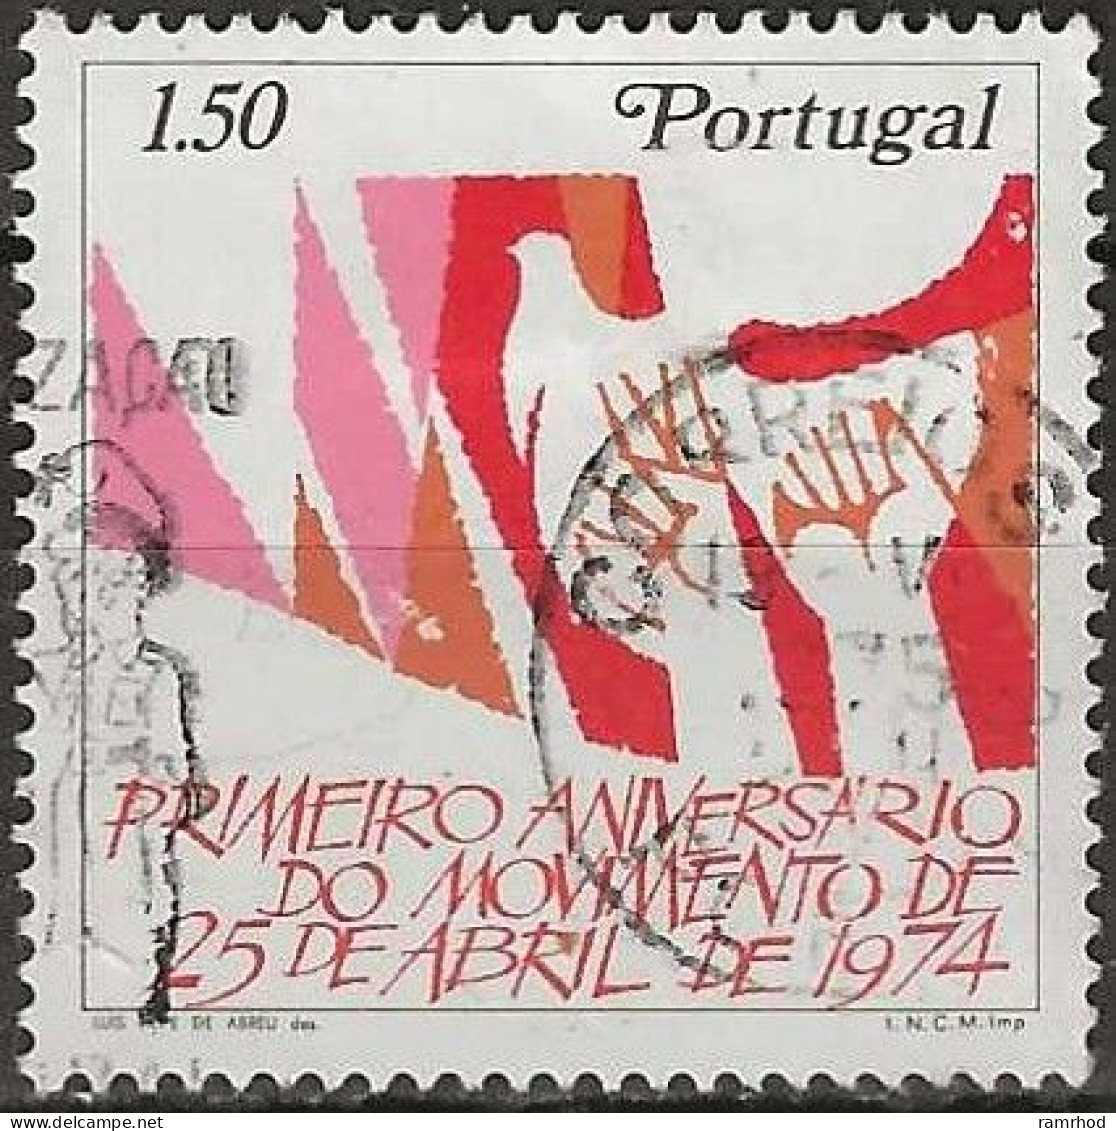 PORTUGAL 1975 1st Anniv Of Portuguese Revolution - 1e50 Hands And Dove Of Peace FU - Usado